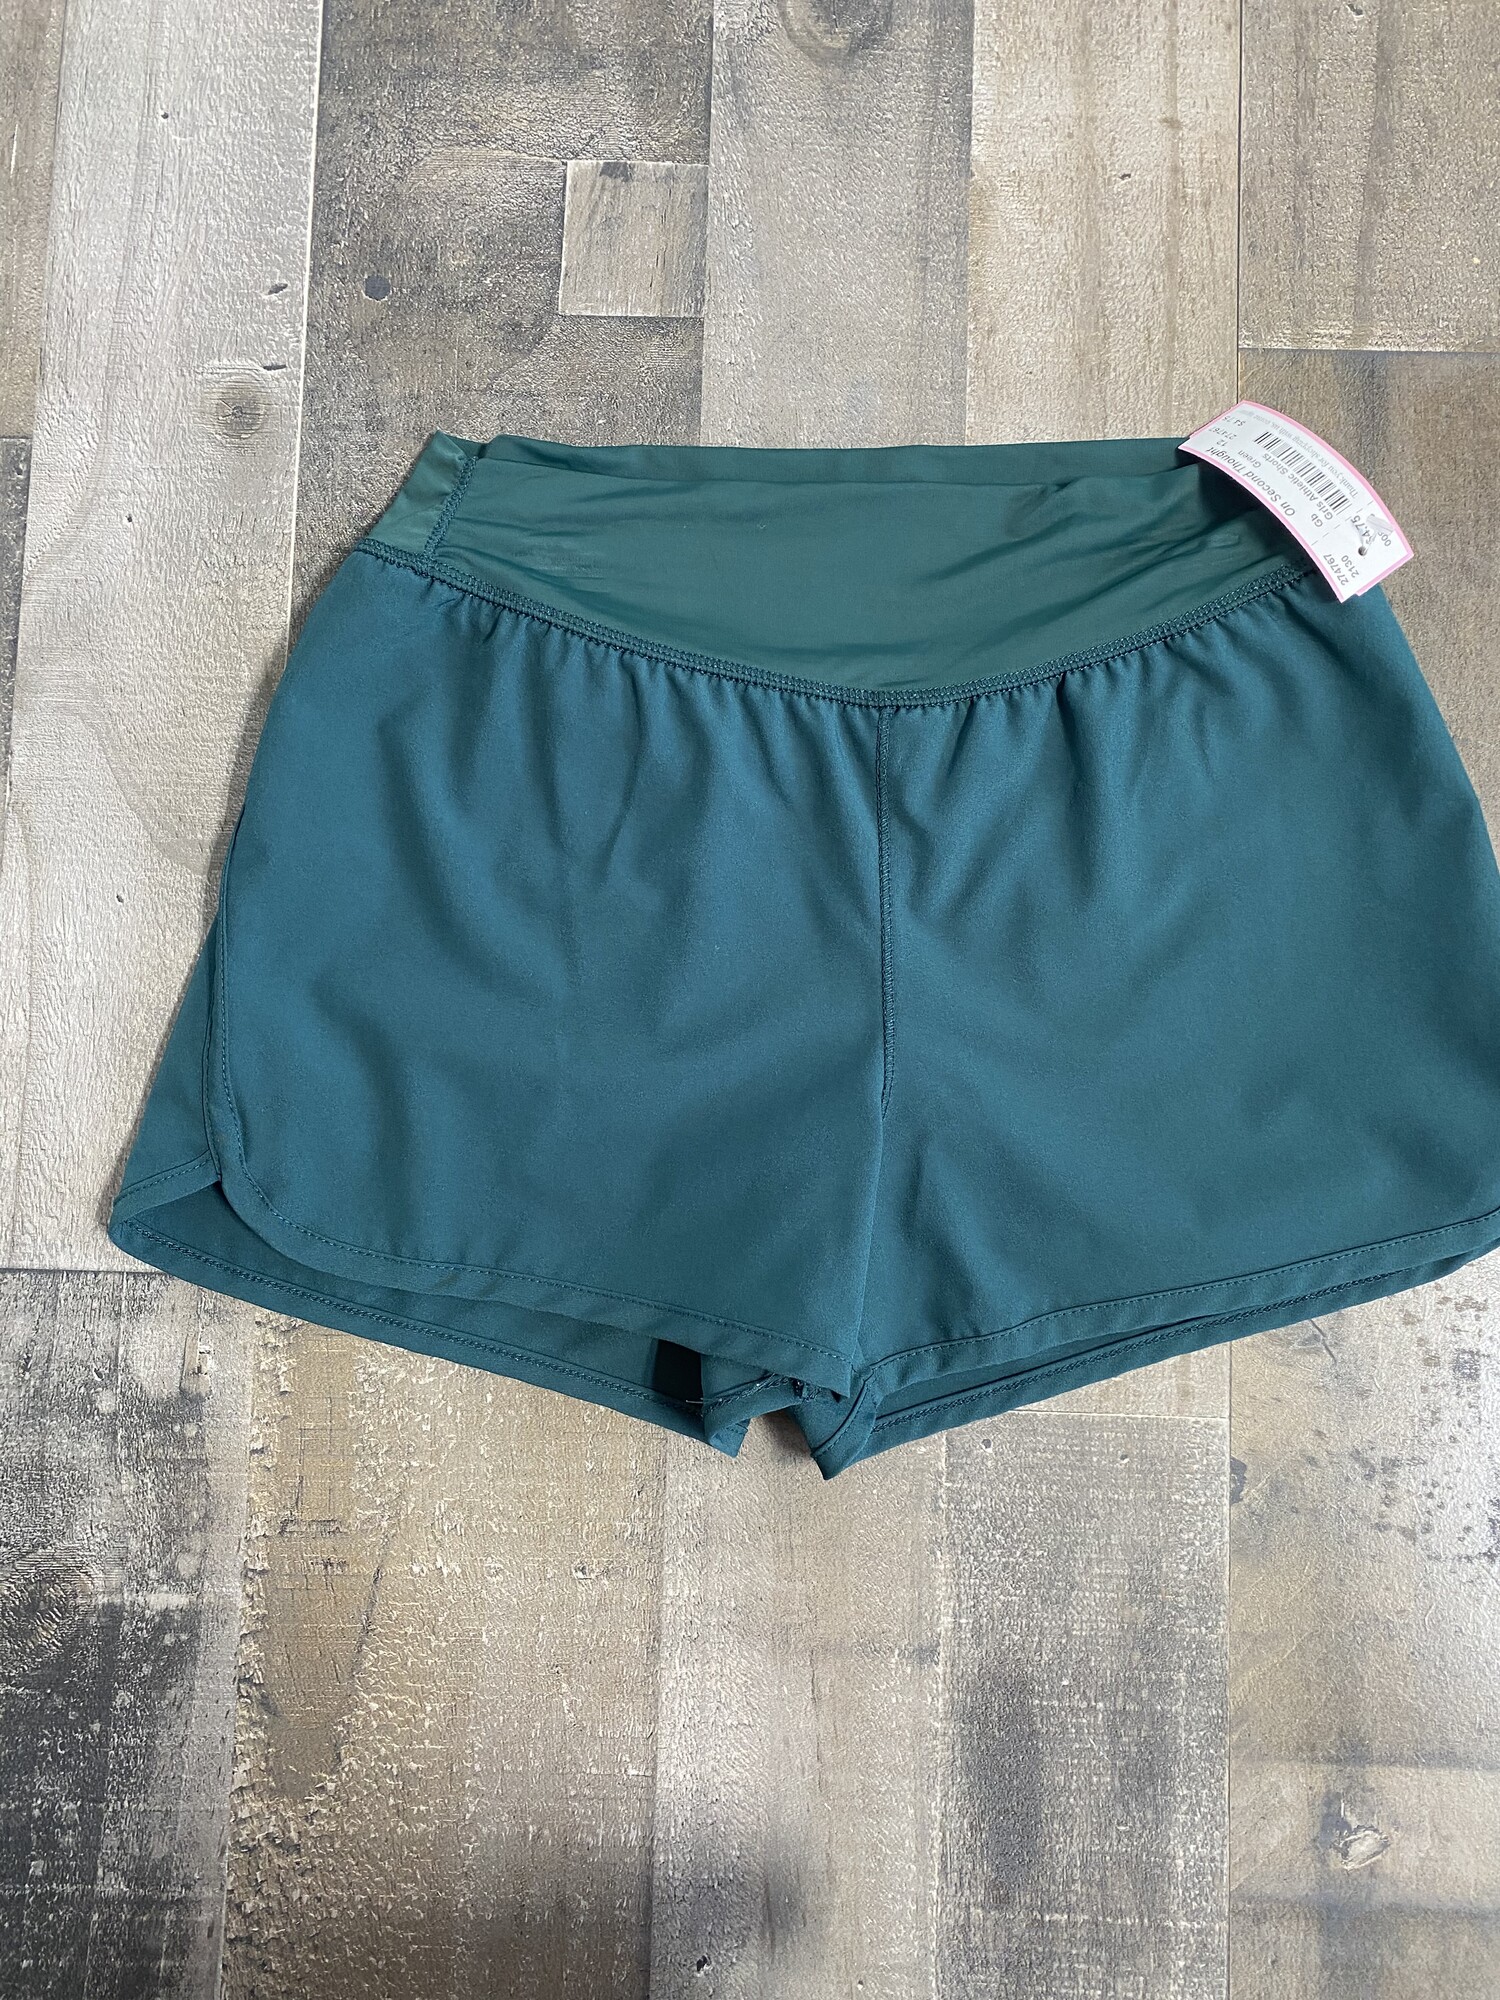 Girls Athletic Shorts, Emrald, Size: 12 (L)